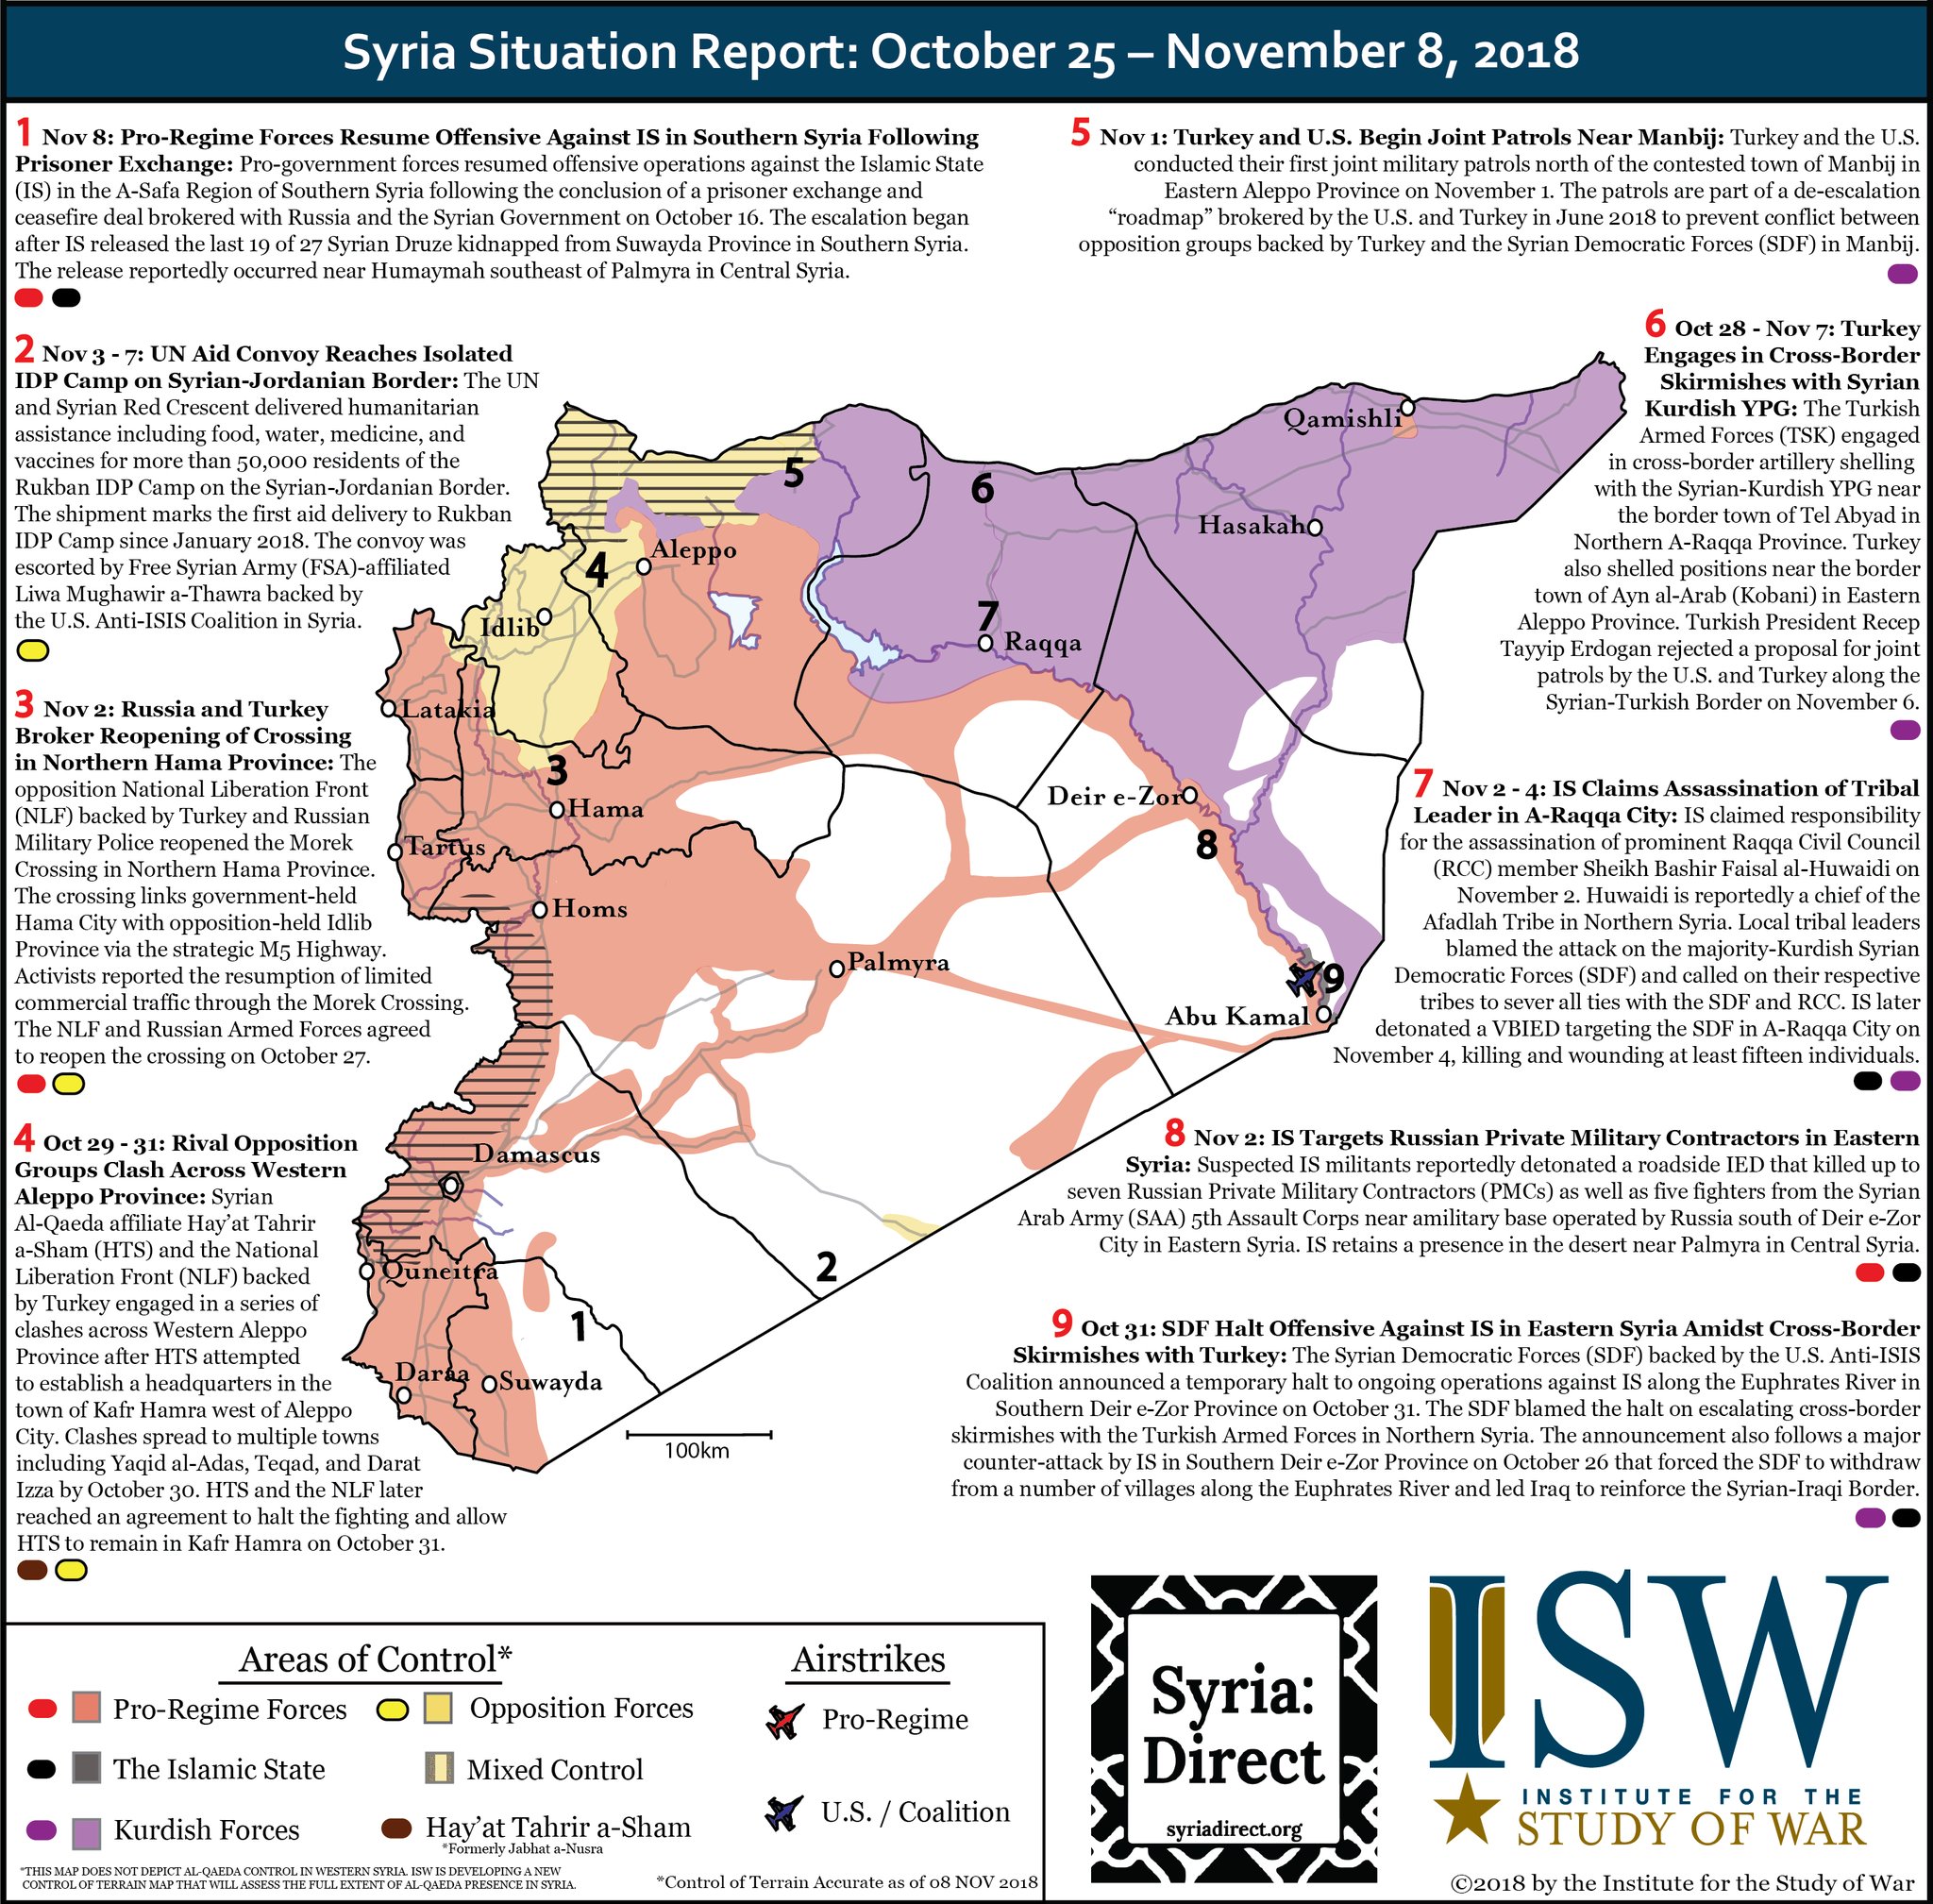 Vojenská situace v Sýrii mezi 25.10-8.11